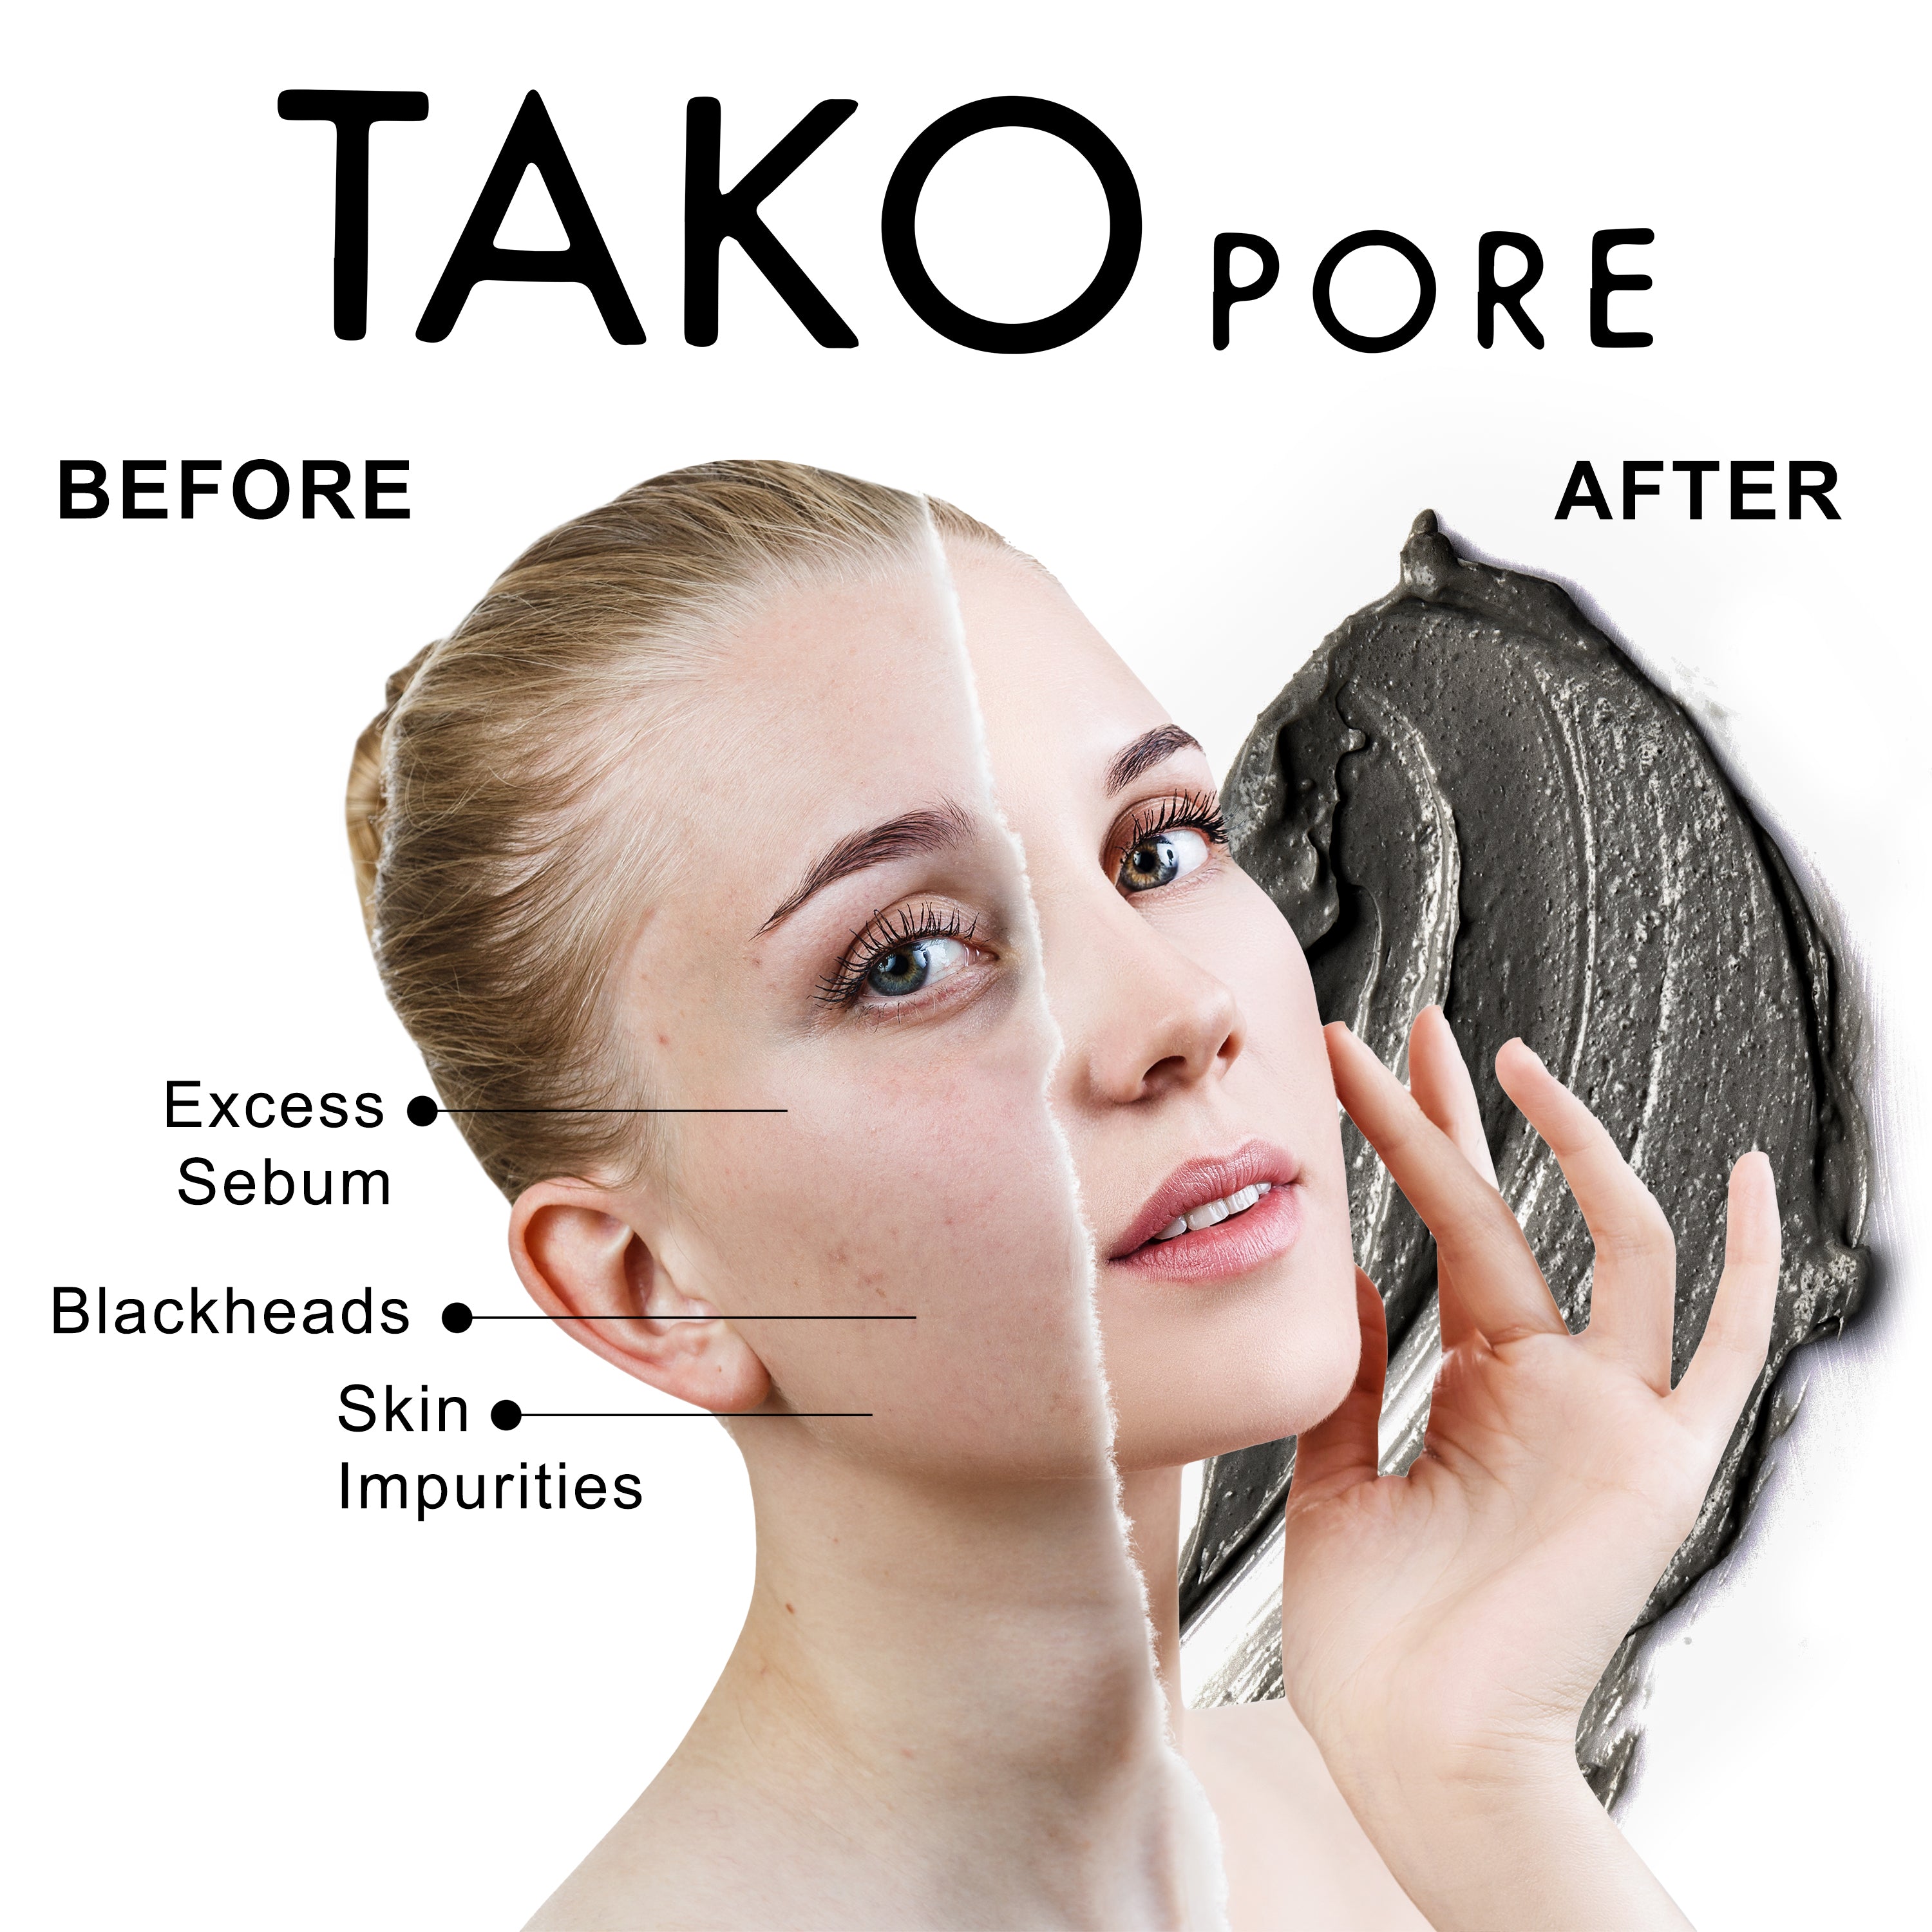 TONYMOLY Tako Pore Blackhead Scrub Stick | Korean Skin Care